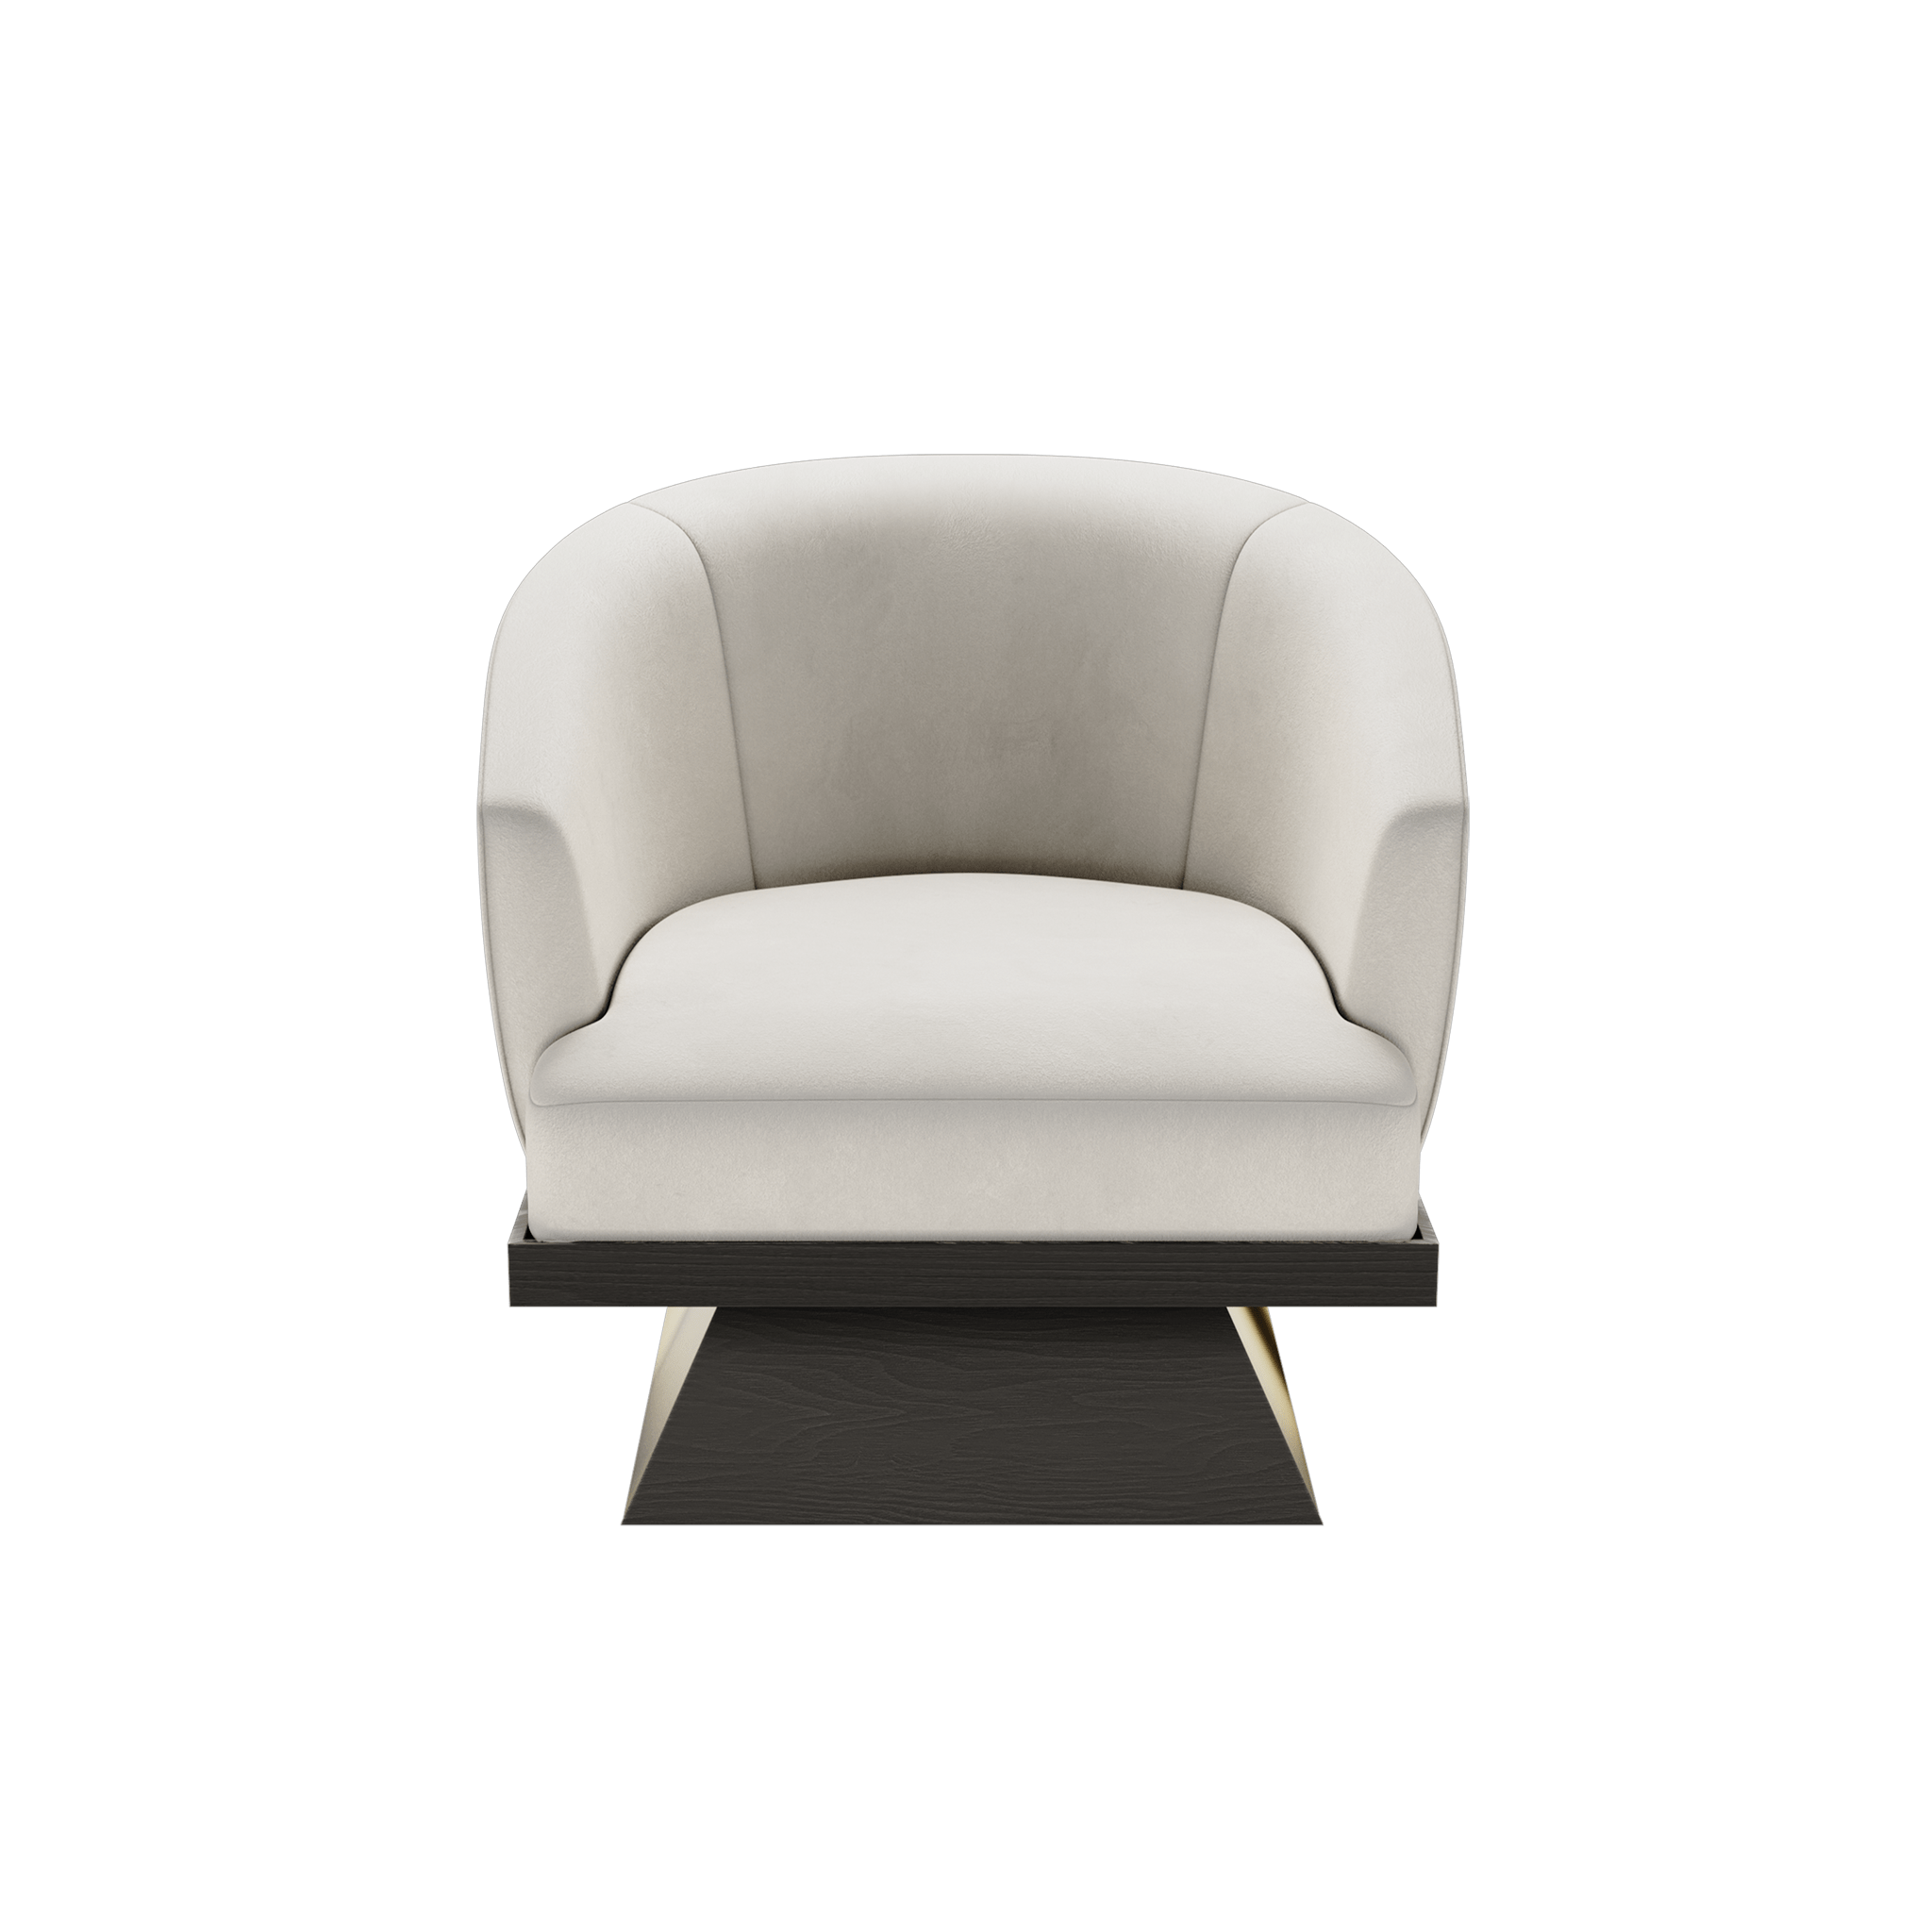 Moa Chair by Hommés Studio